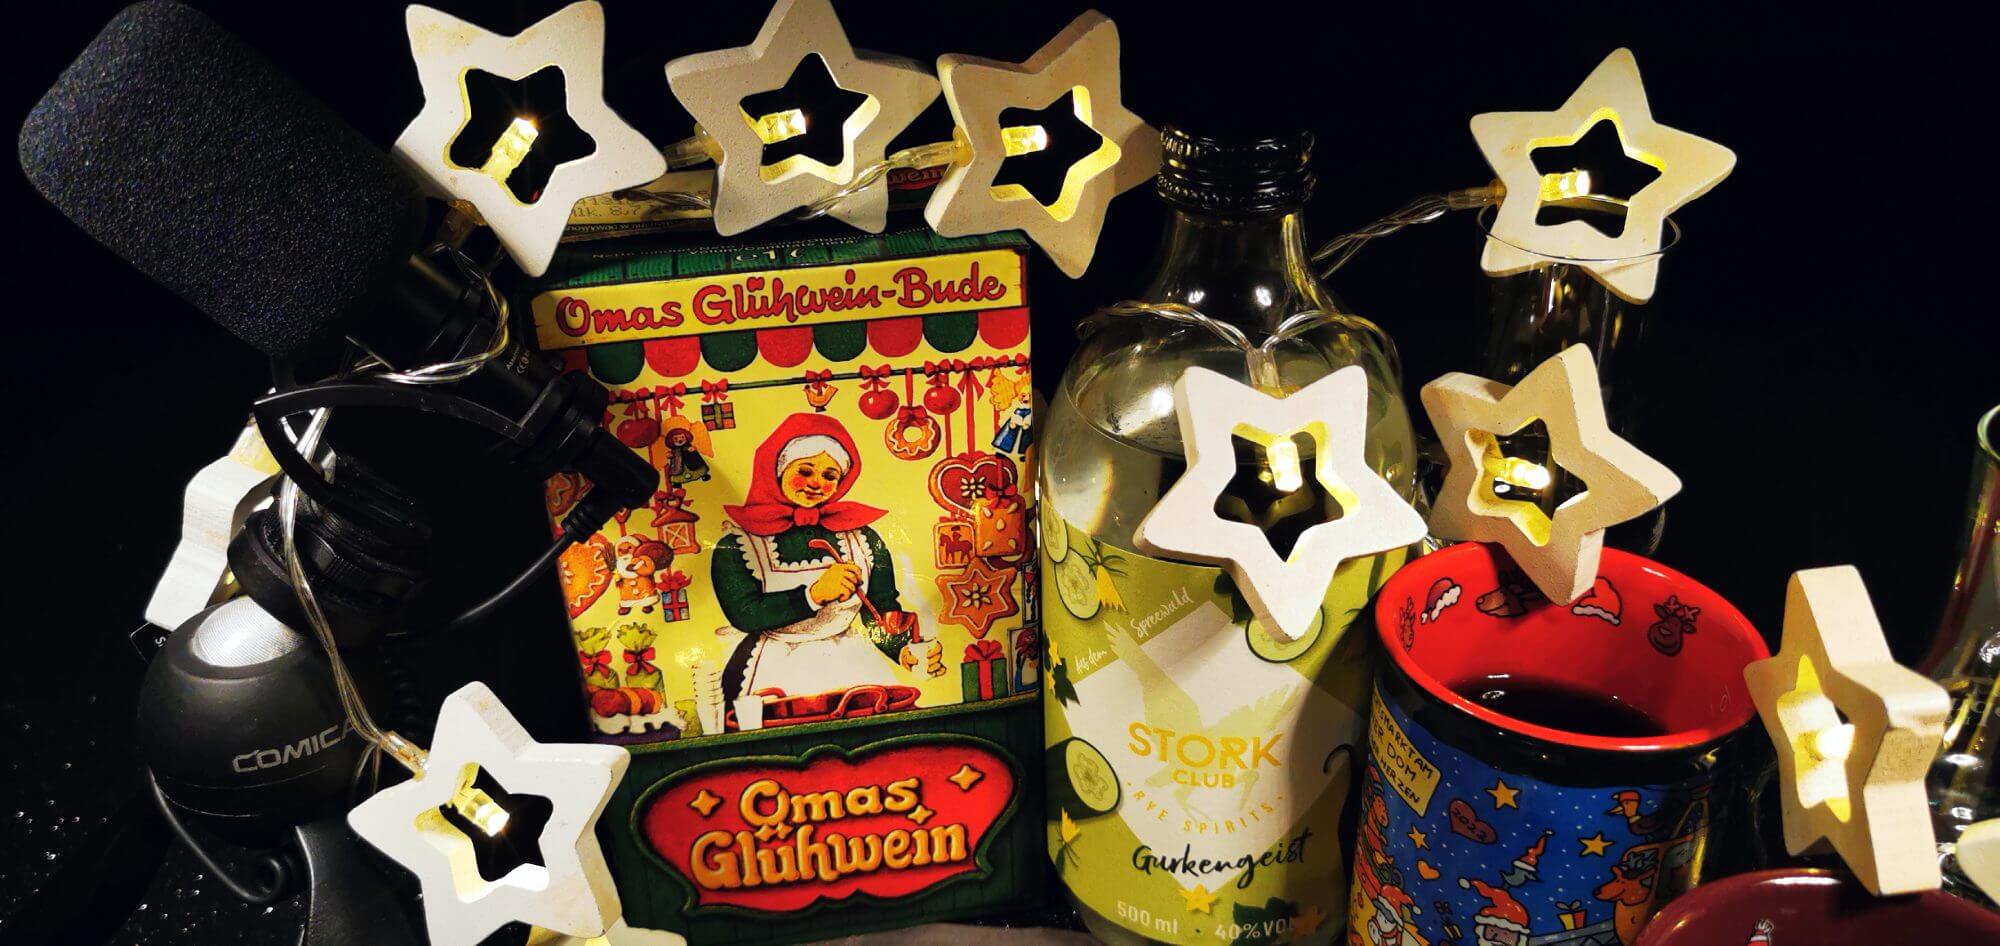 Bild vom Glühwein-Check.de: Eine Flasche Gurkengeist neben einem Tetrapack Oma Glühwein-Buden Glühwein